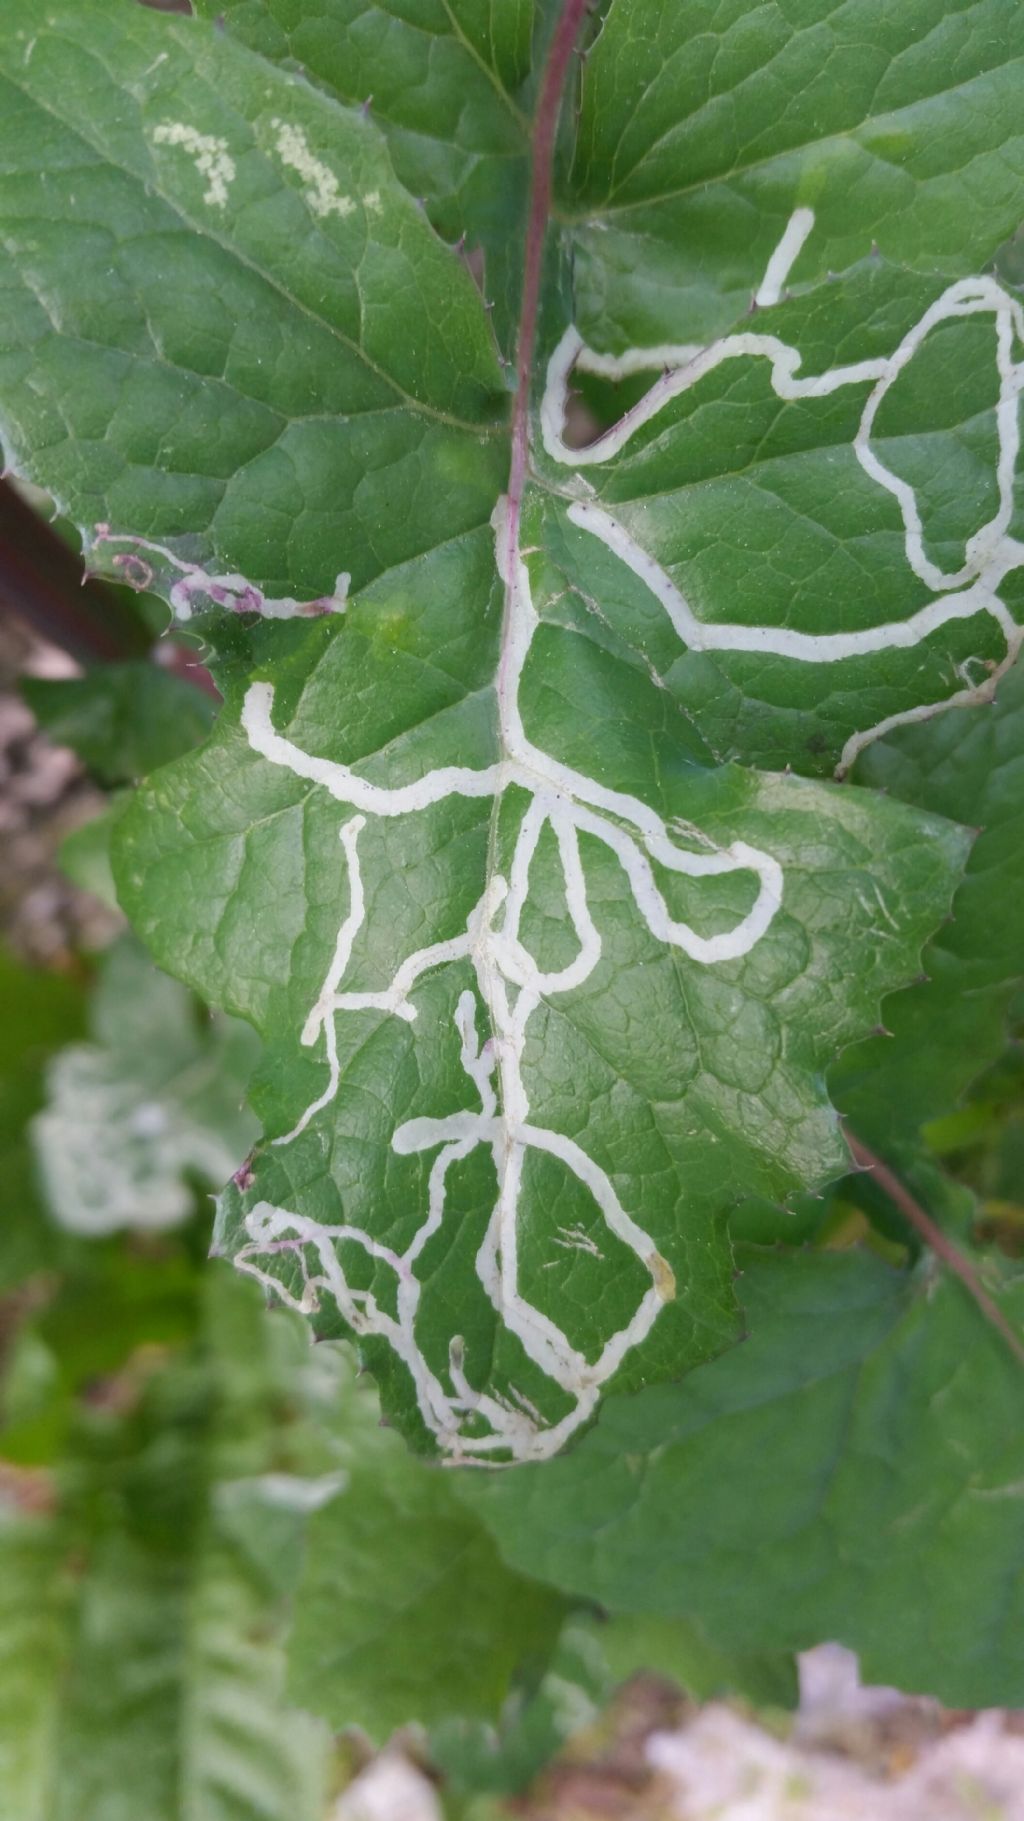 Striscie bianche su foglie: gallerie scavate da larve di Agromyzidae